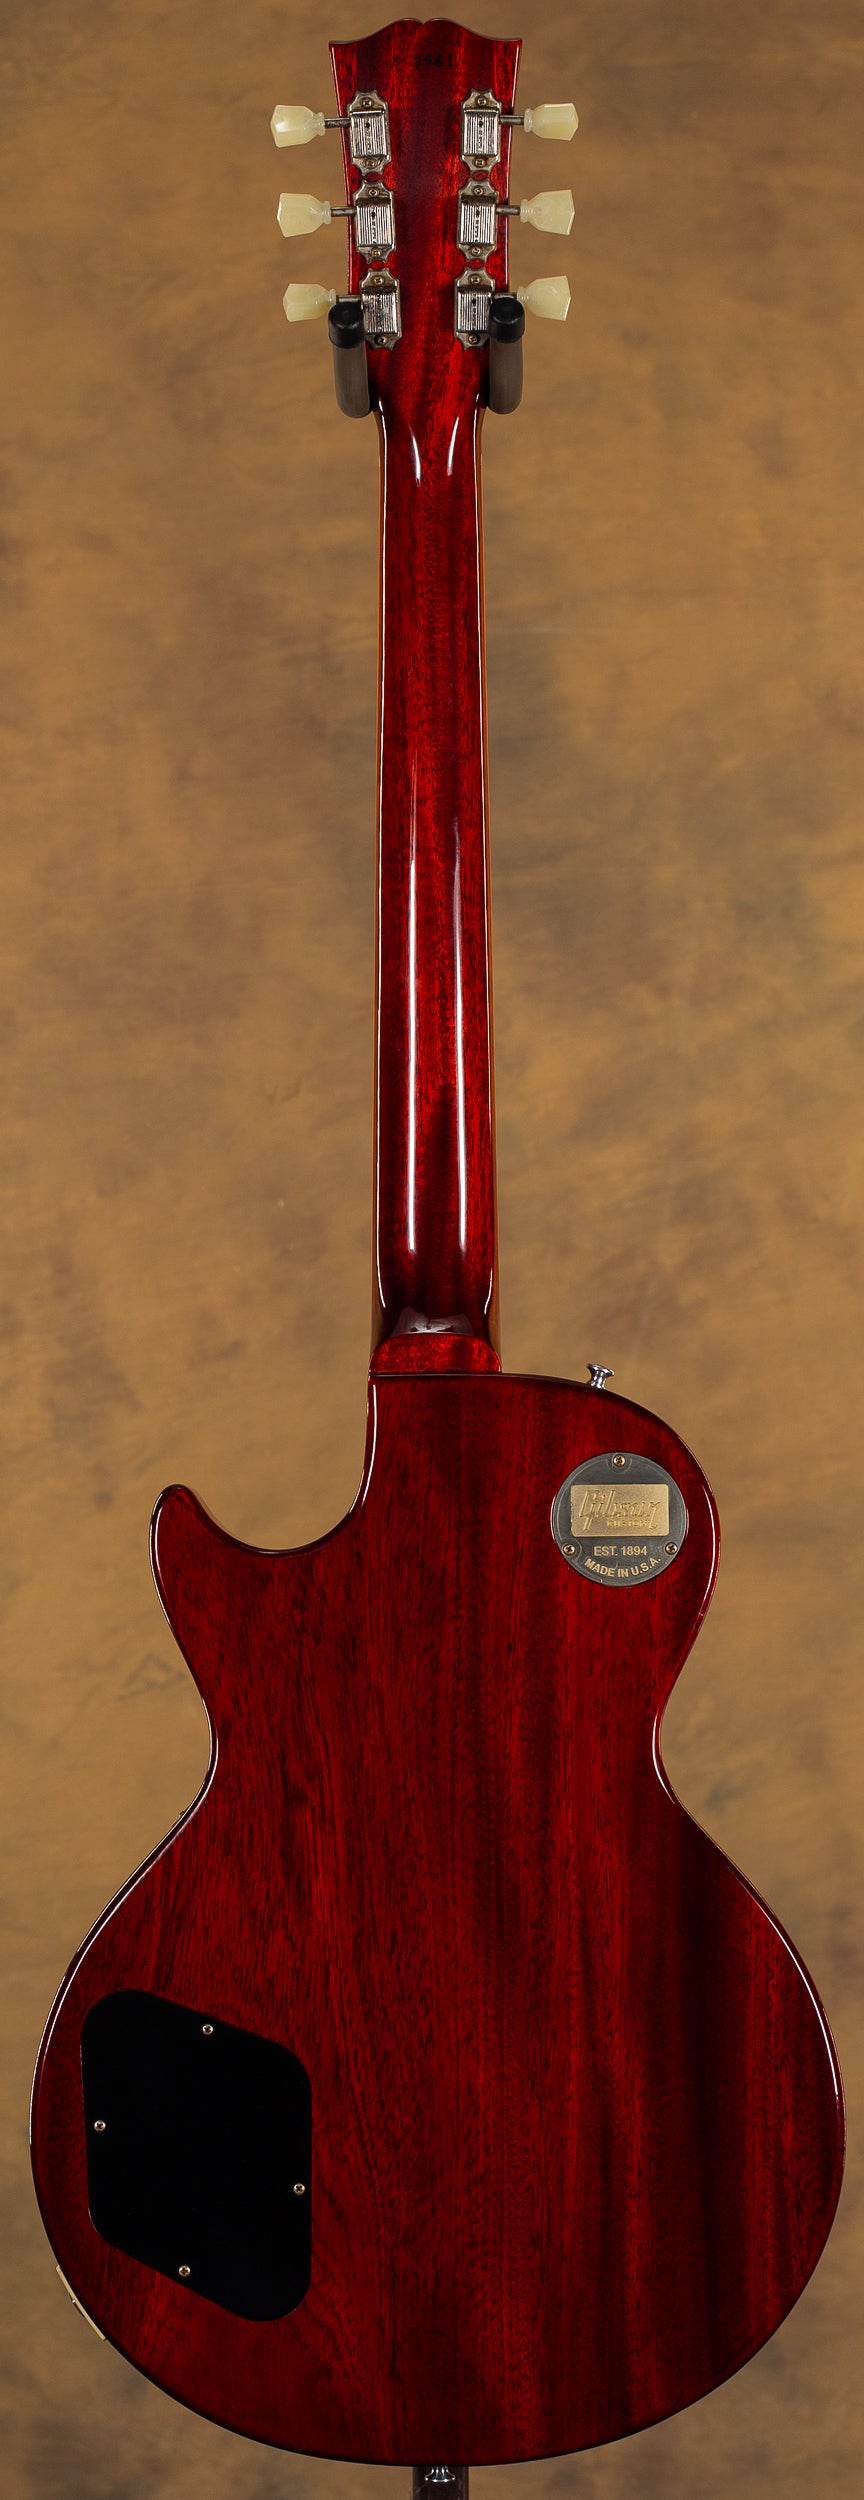 2019 Gibson Custom Shop 1958 Les Paul Standard Reissue Iced Tea 